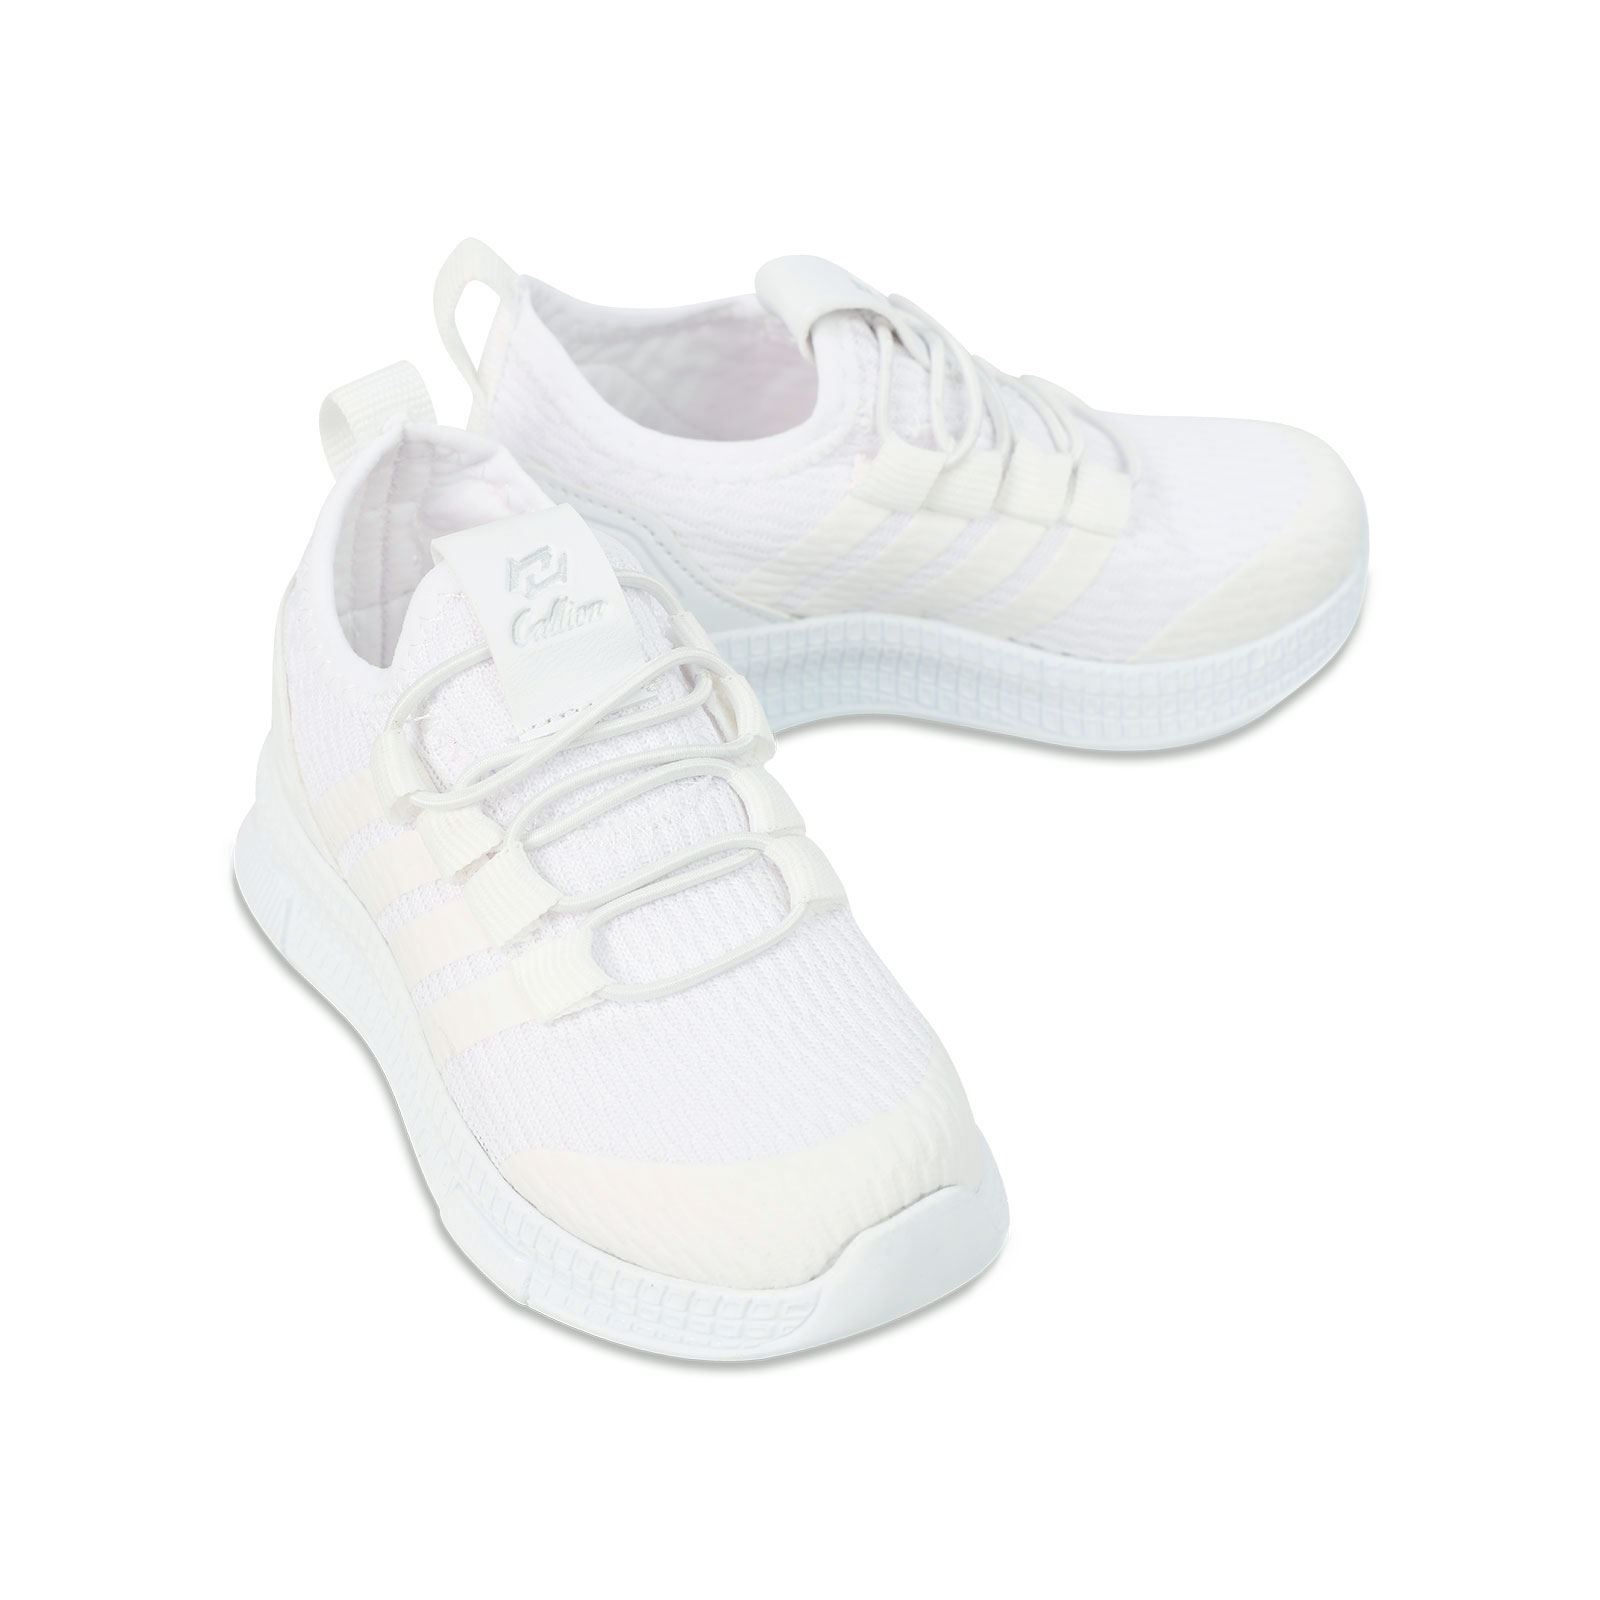 Callion Kız Çocuk Spor Ayakkabı 31-35 Numara Beyaz